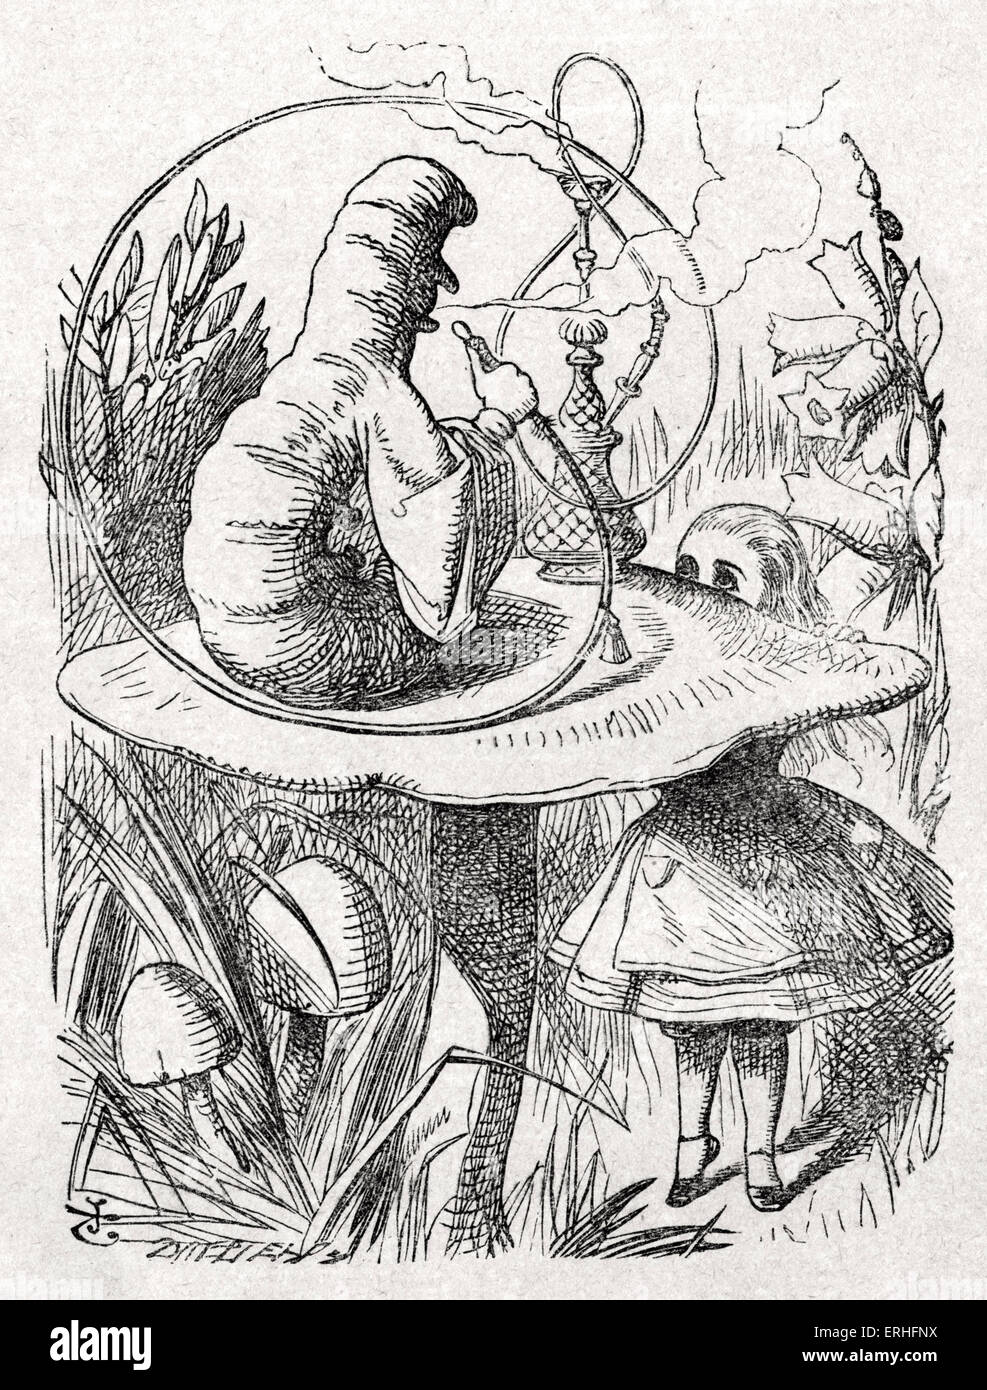 La chenille, d'Alice au Pays des merveilles de Lewis Carroll (Charles Lutwidge Dodgson), anglais et auteur de livres pour enfants Banque D'Images